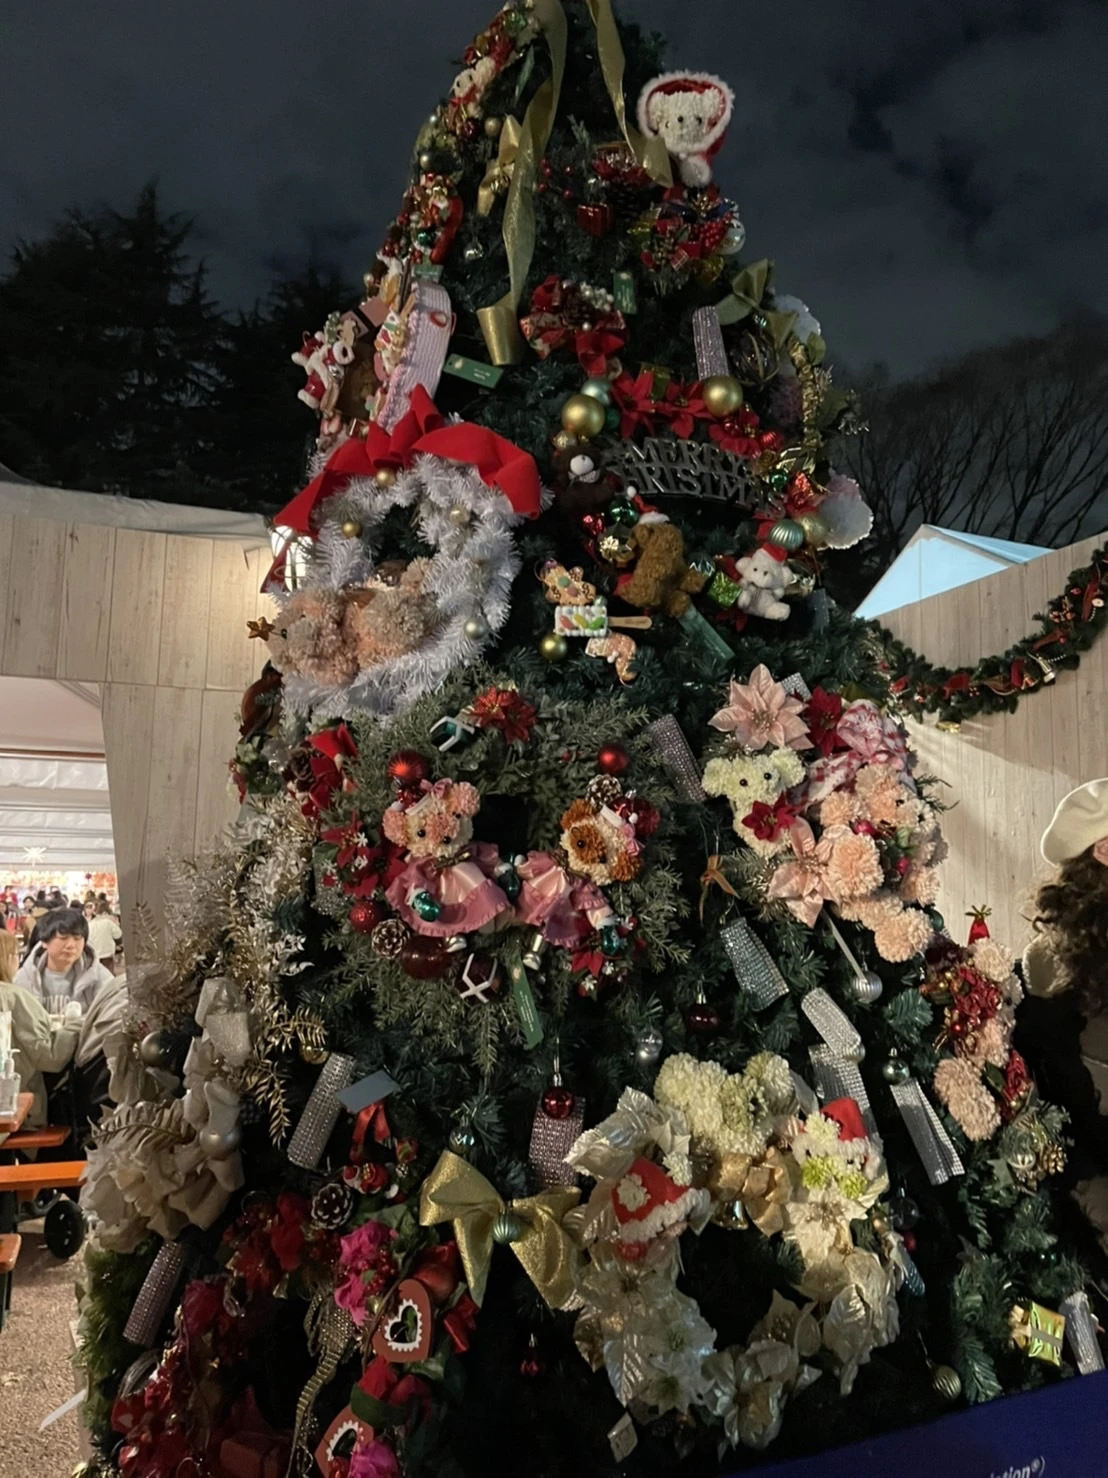 東京クリスマスマーケット
クリスマスツリー